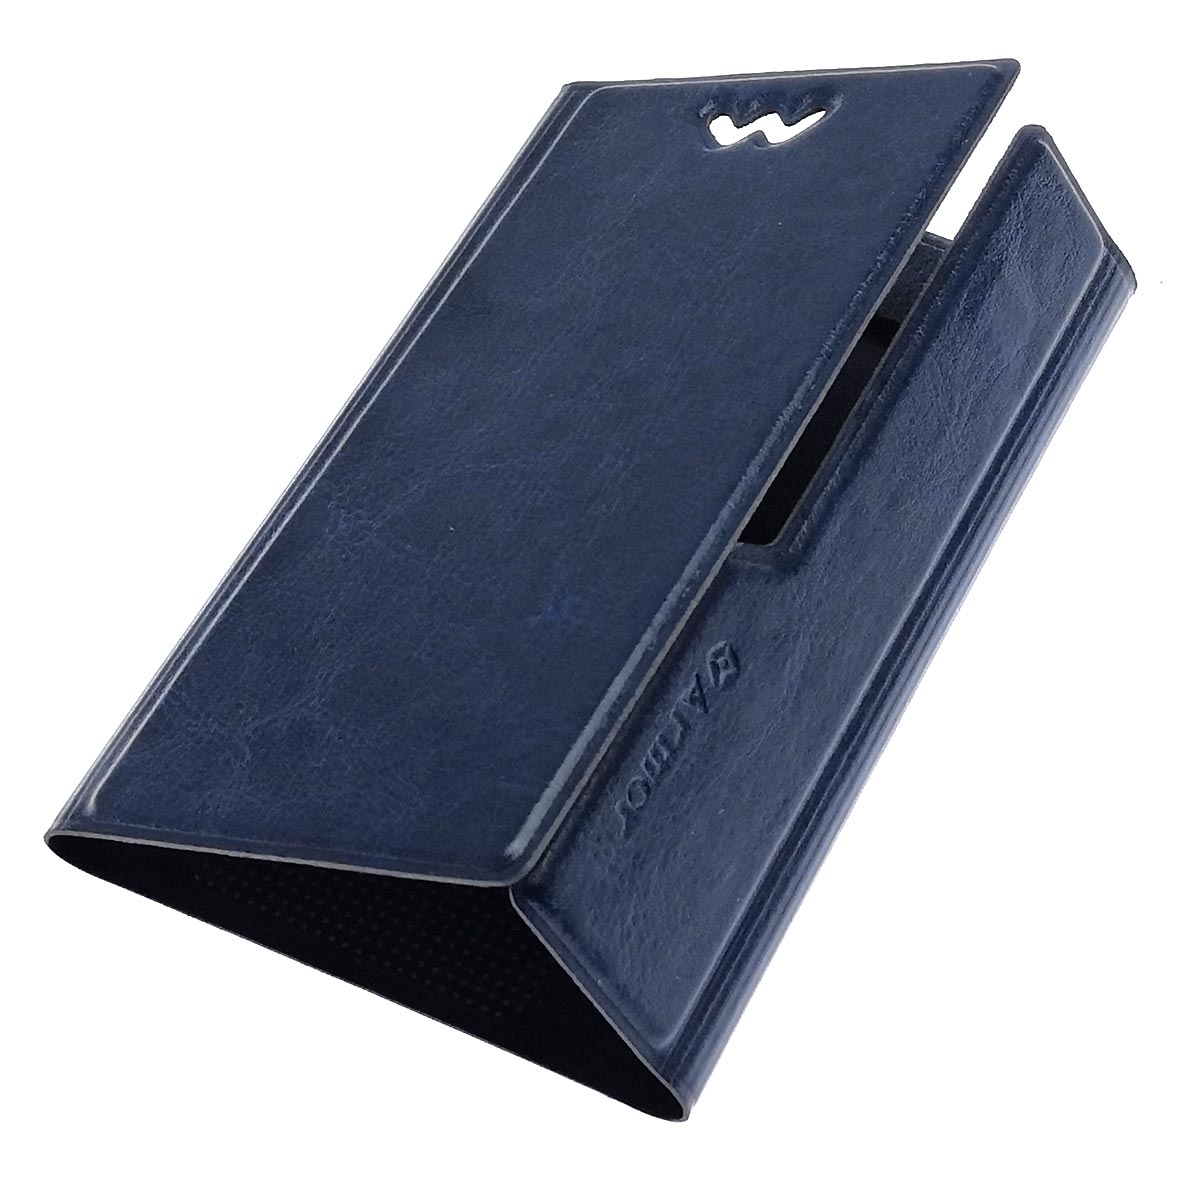 Чехол книжка универсальная Армор для смартфонов размером S, экокожа, цвет синий